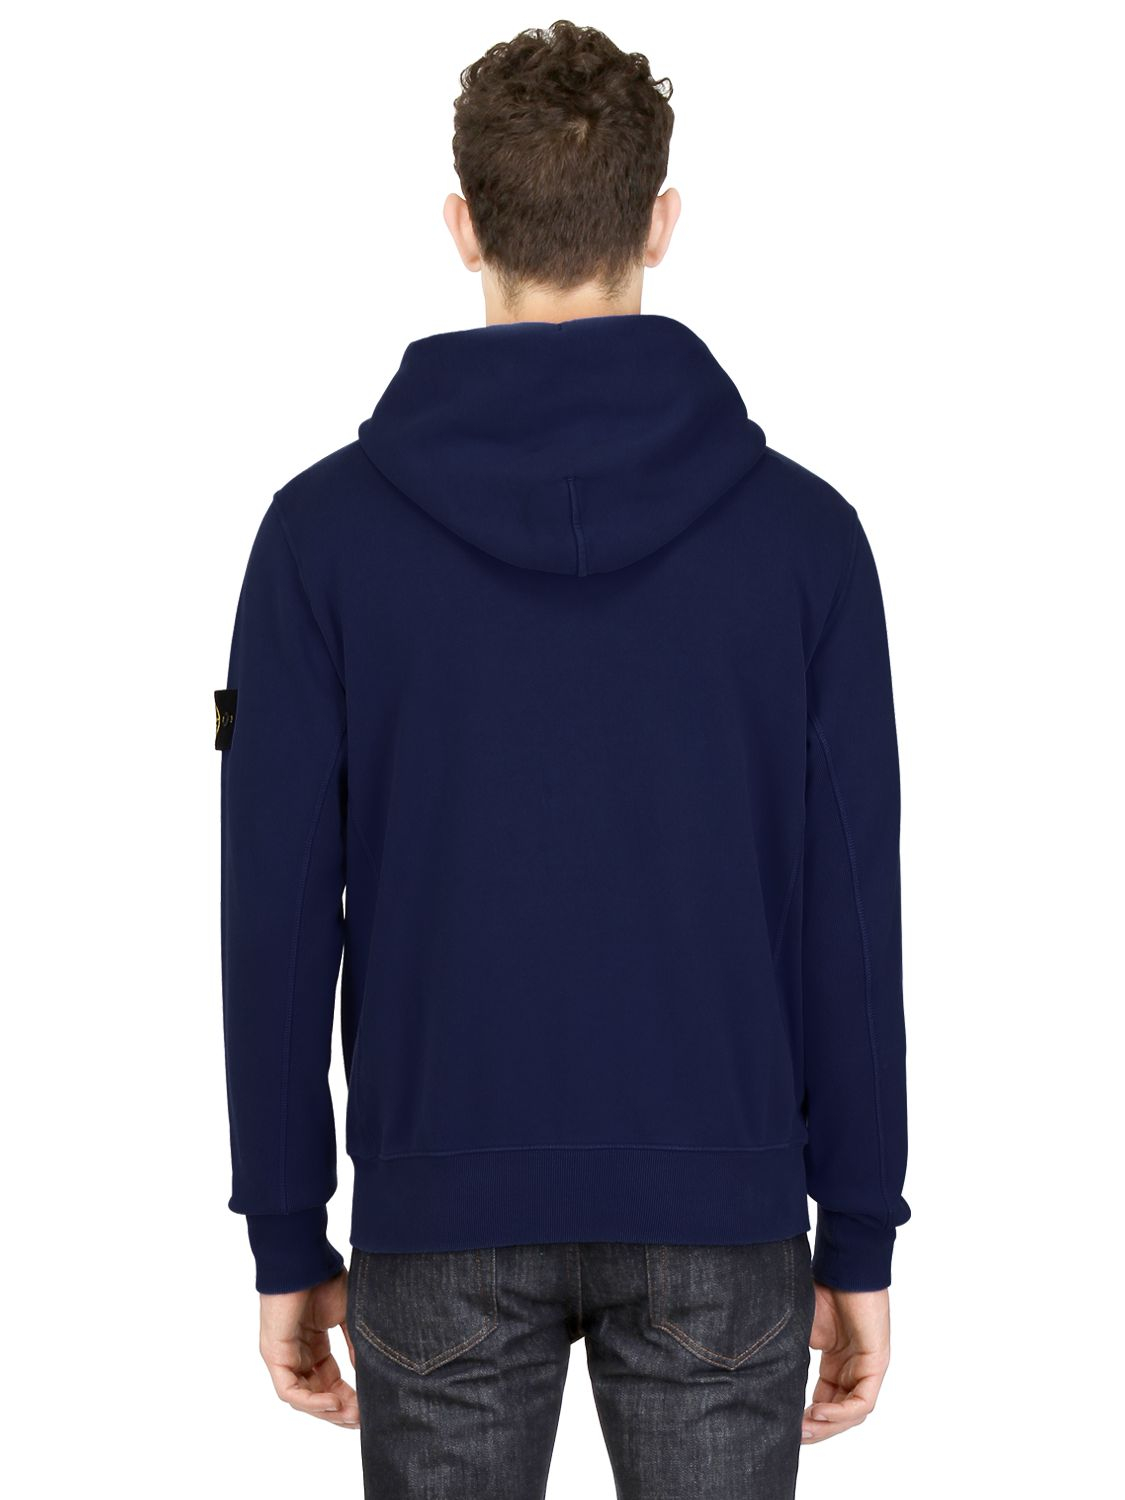 Lyst - Stone Island Hooded Cotton Jersey Fleece Sweatshirt in Blue for Men